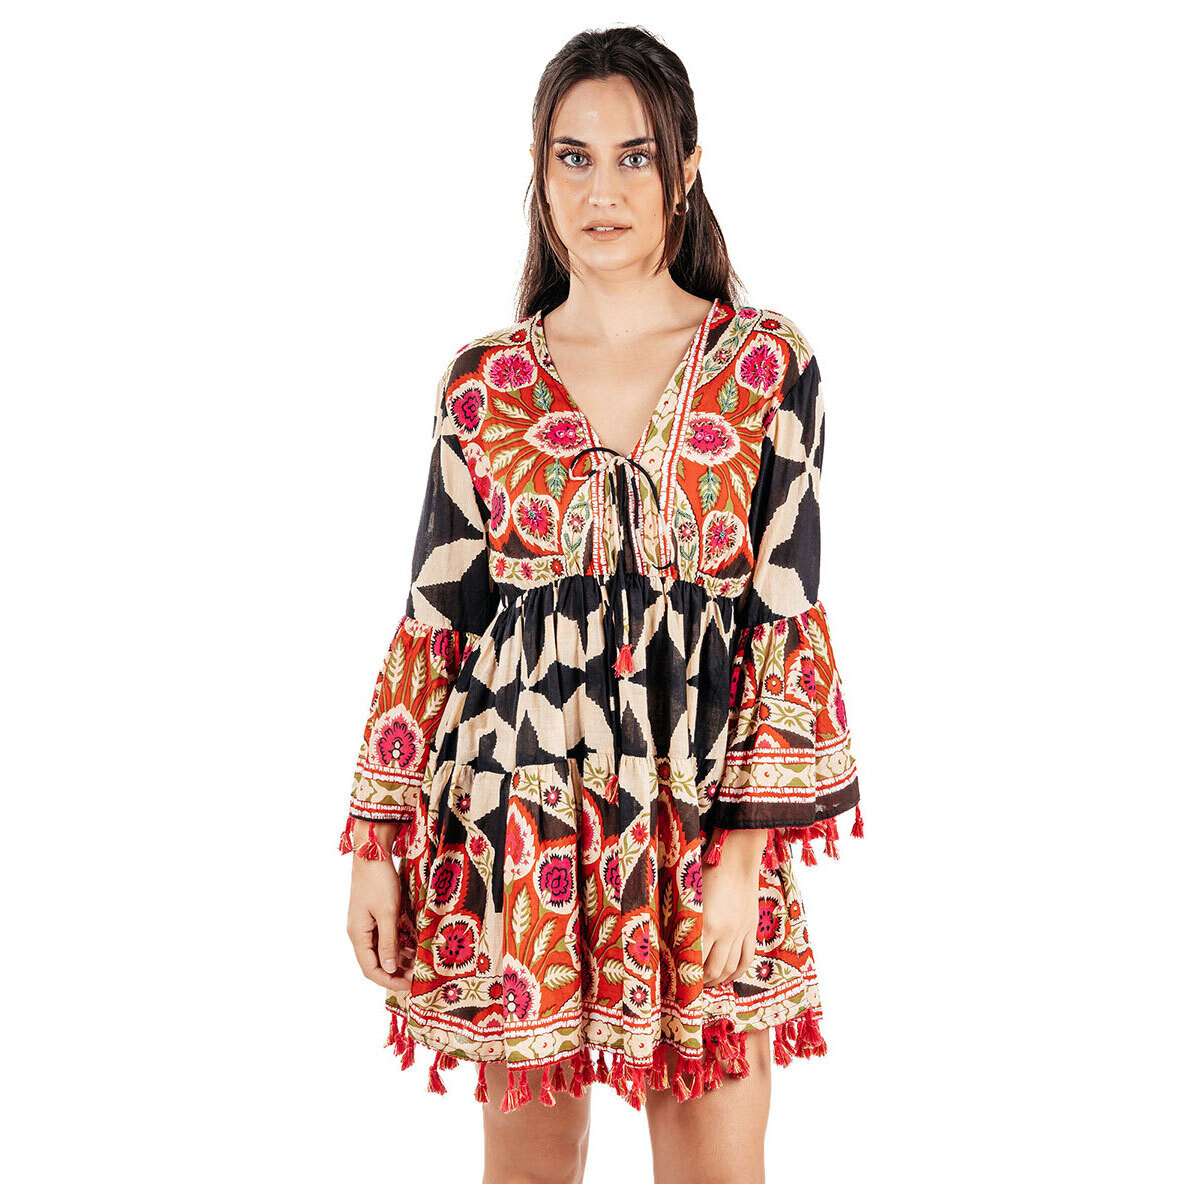 Textil Ženy Krátké šaty Isla Bonita By Sigris Krátké Šaty Červená